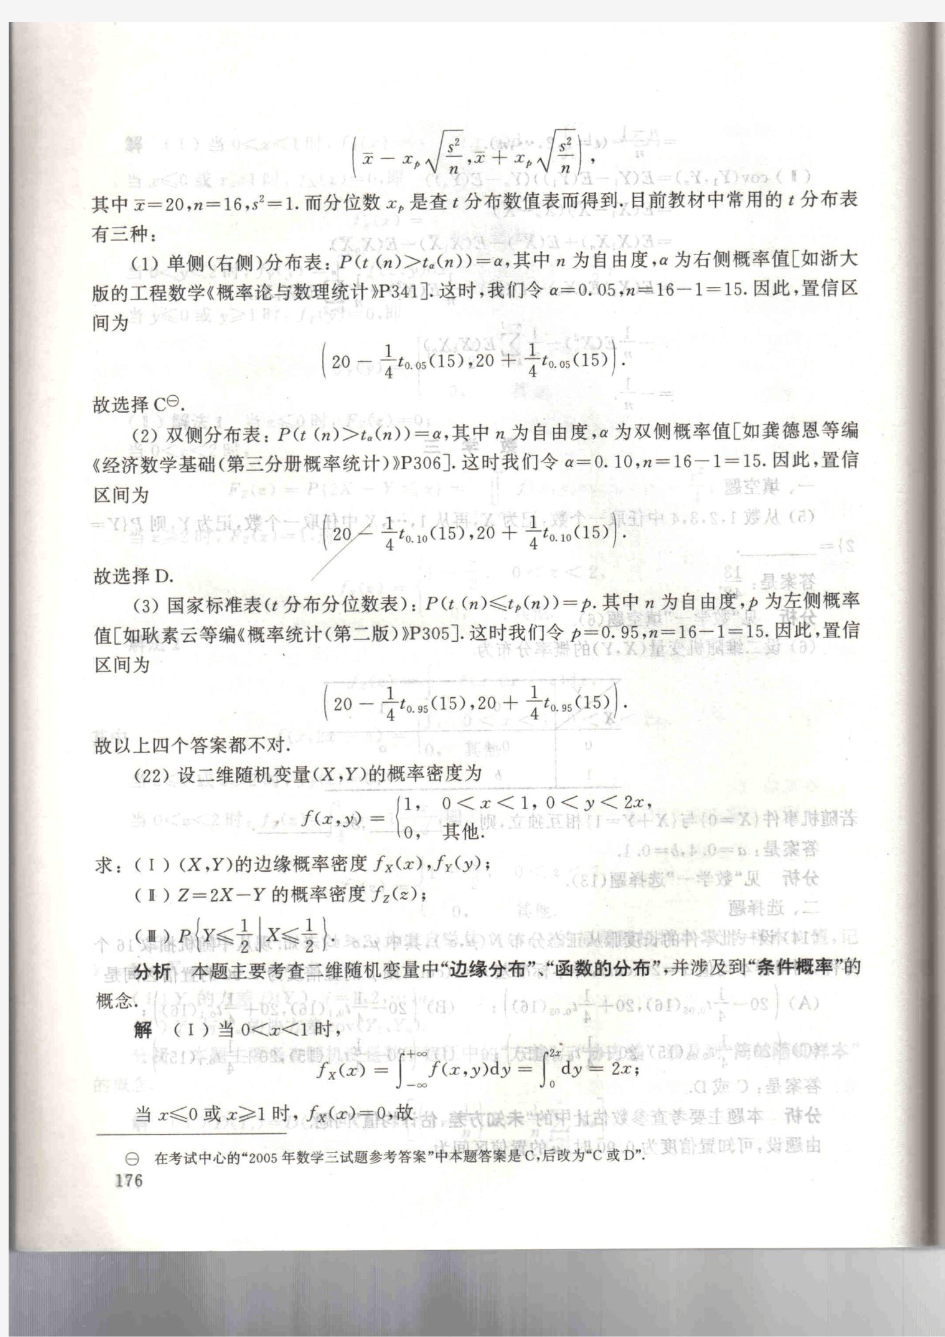 新东方_北京大学_姚孟臣_概率论与数理统计讲义_(提高篇)_176-最后一页